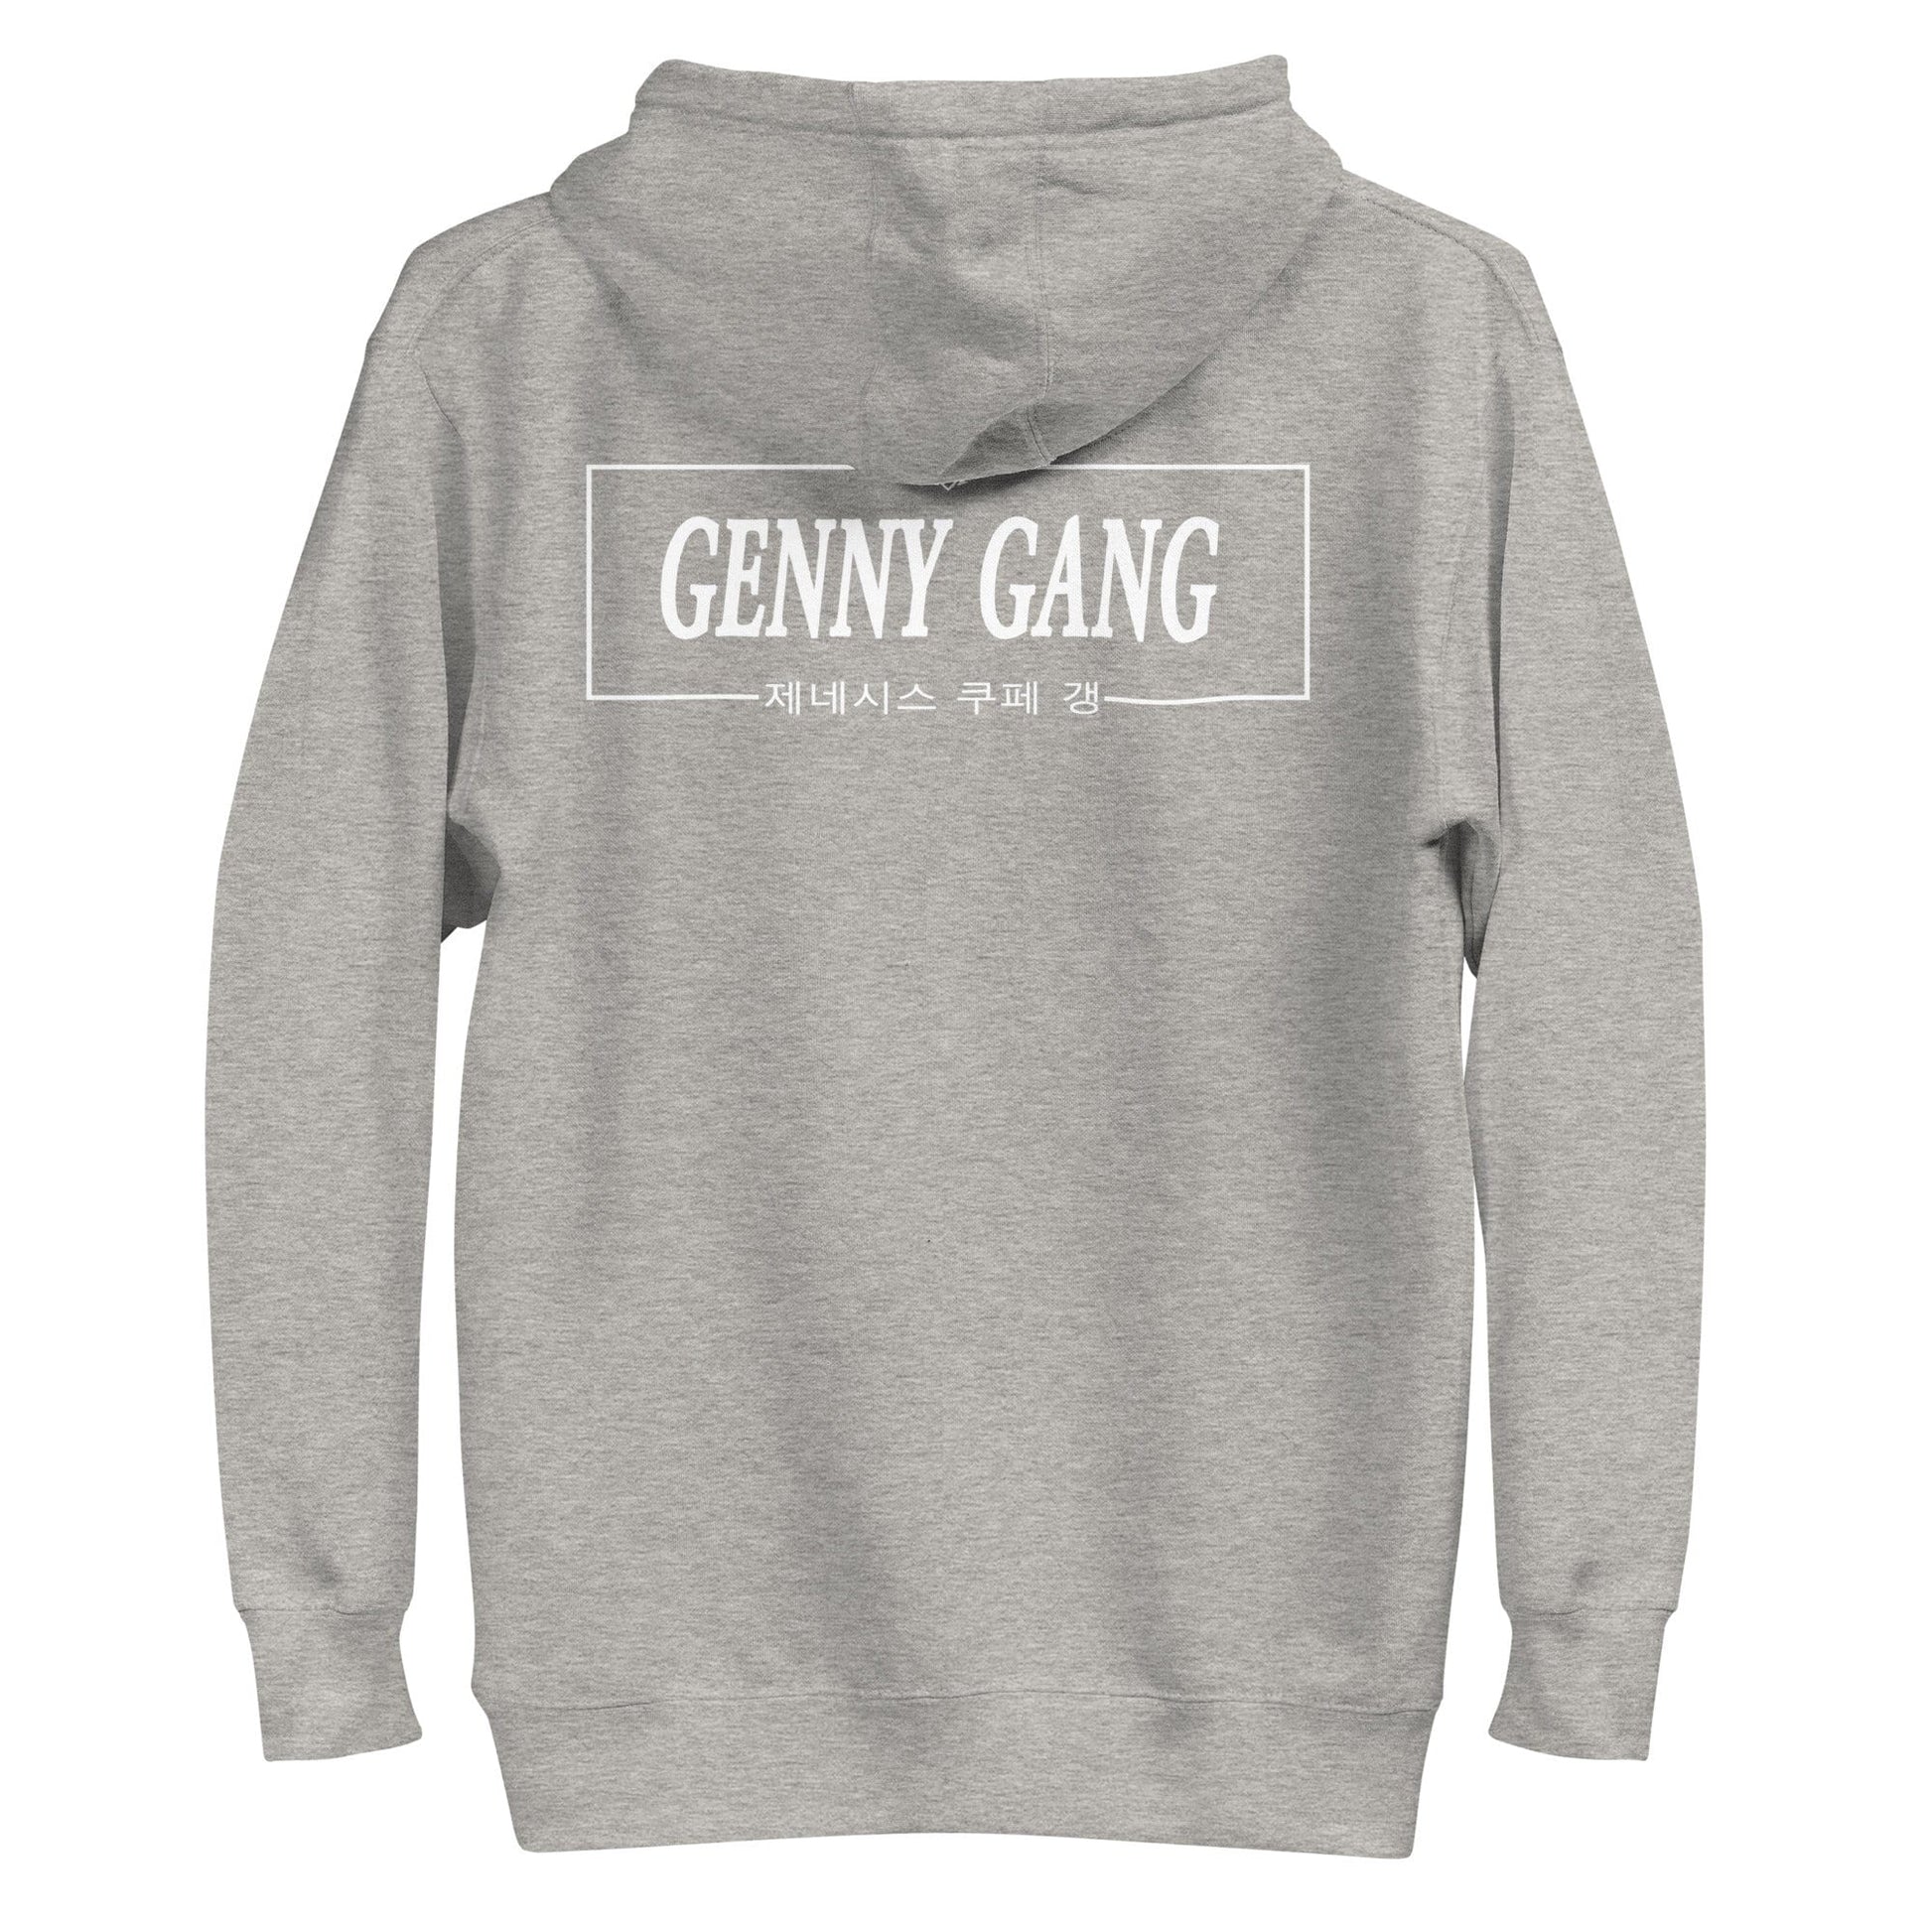 LightExcel Genny Gang Hoodie